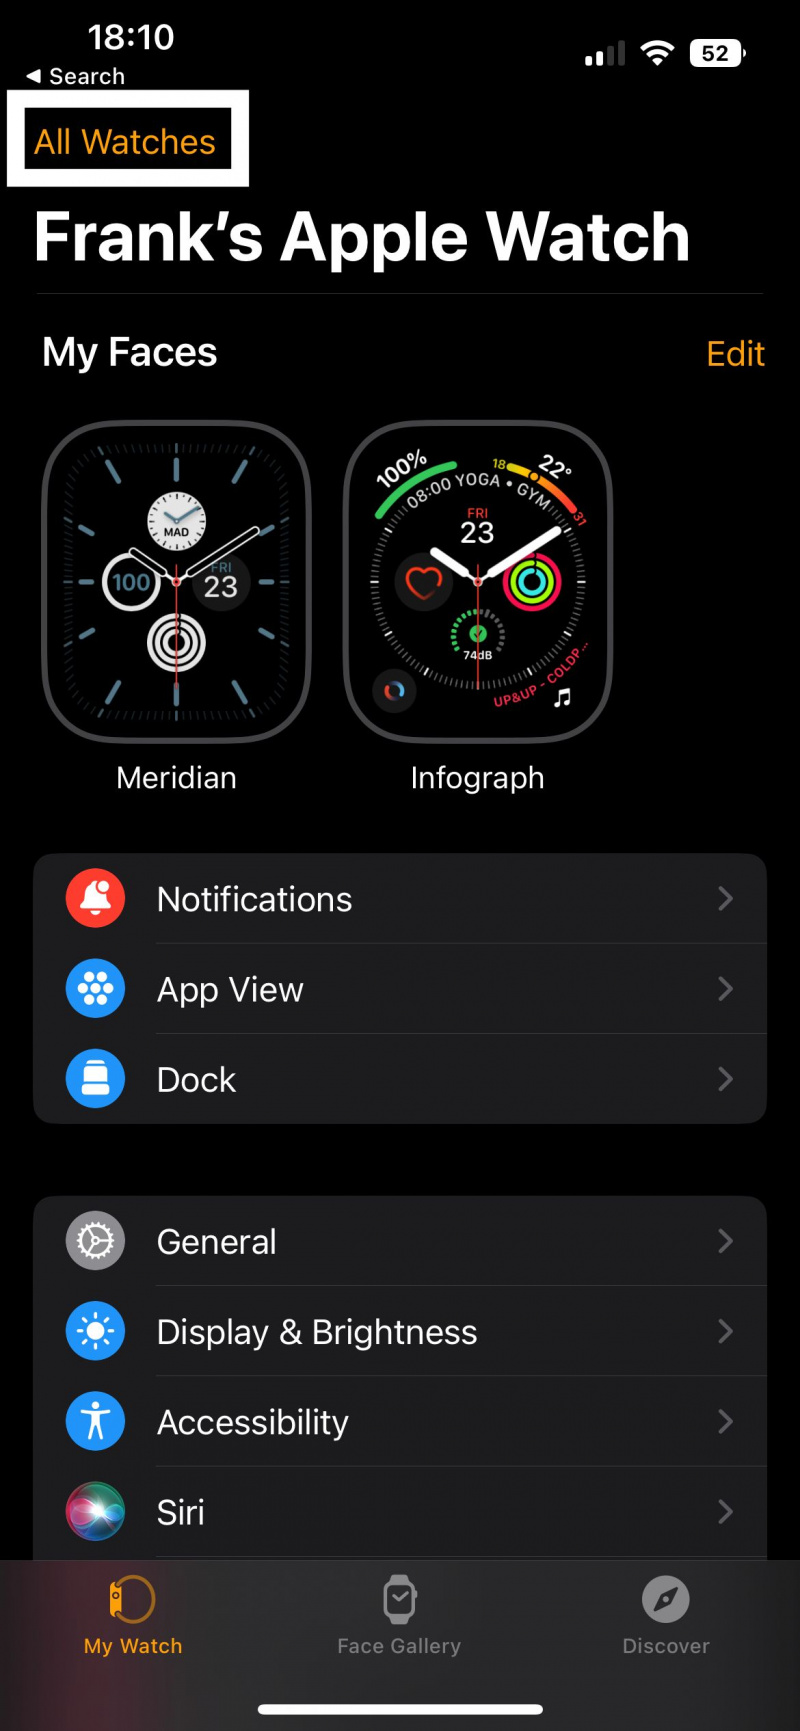   لقطة شاشة لتطبيق Watch توضح مكان النقر للوصول إلى جميع ساعات Apple Watch الخاصة بك.